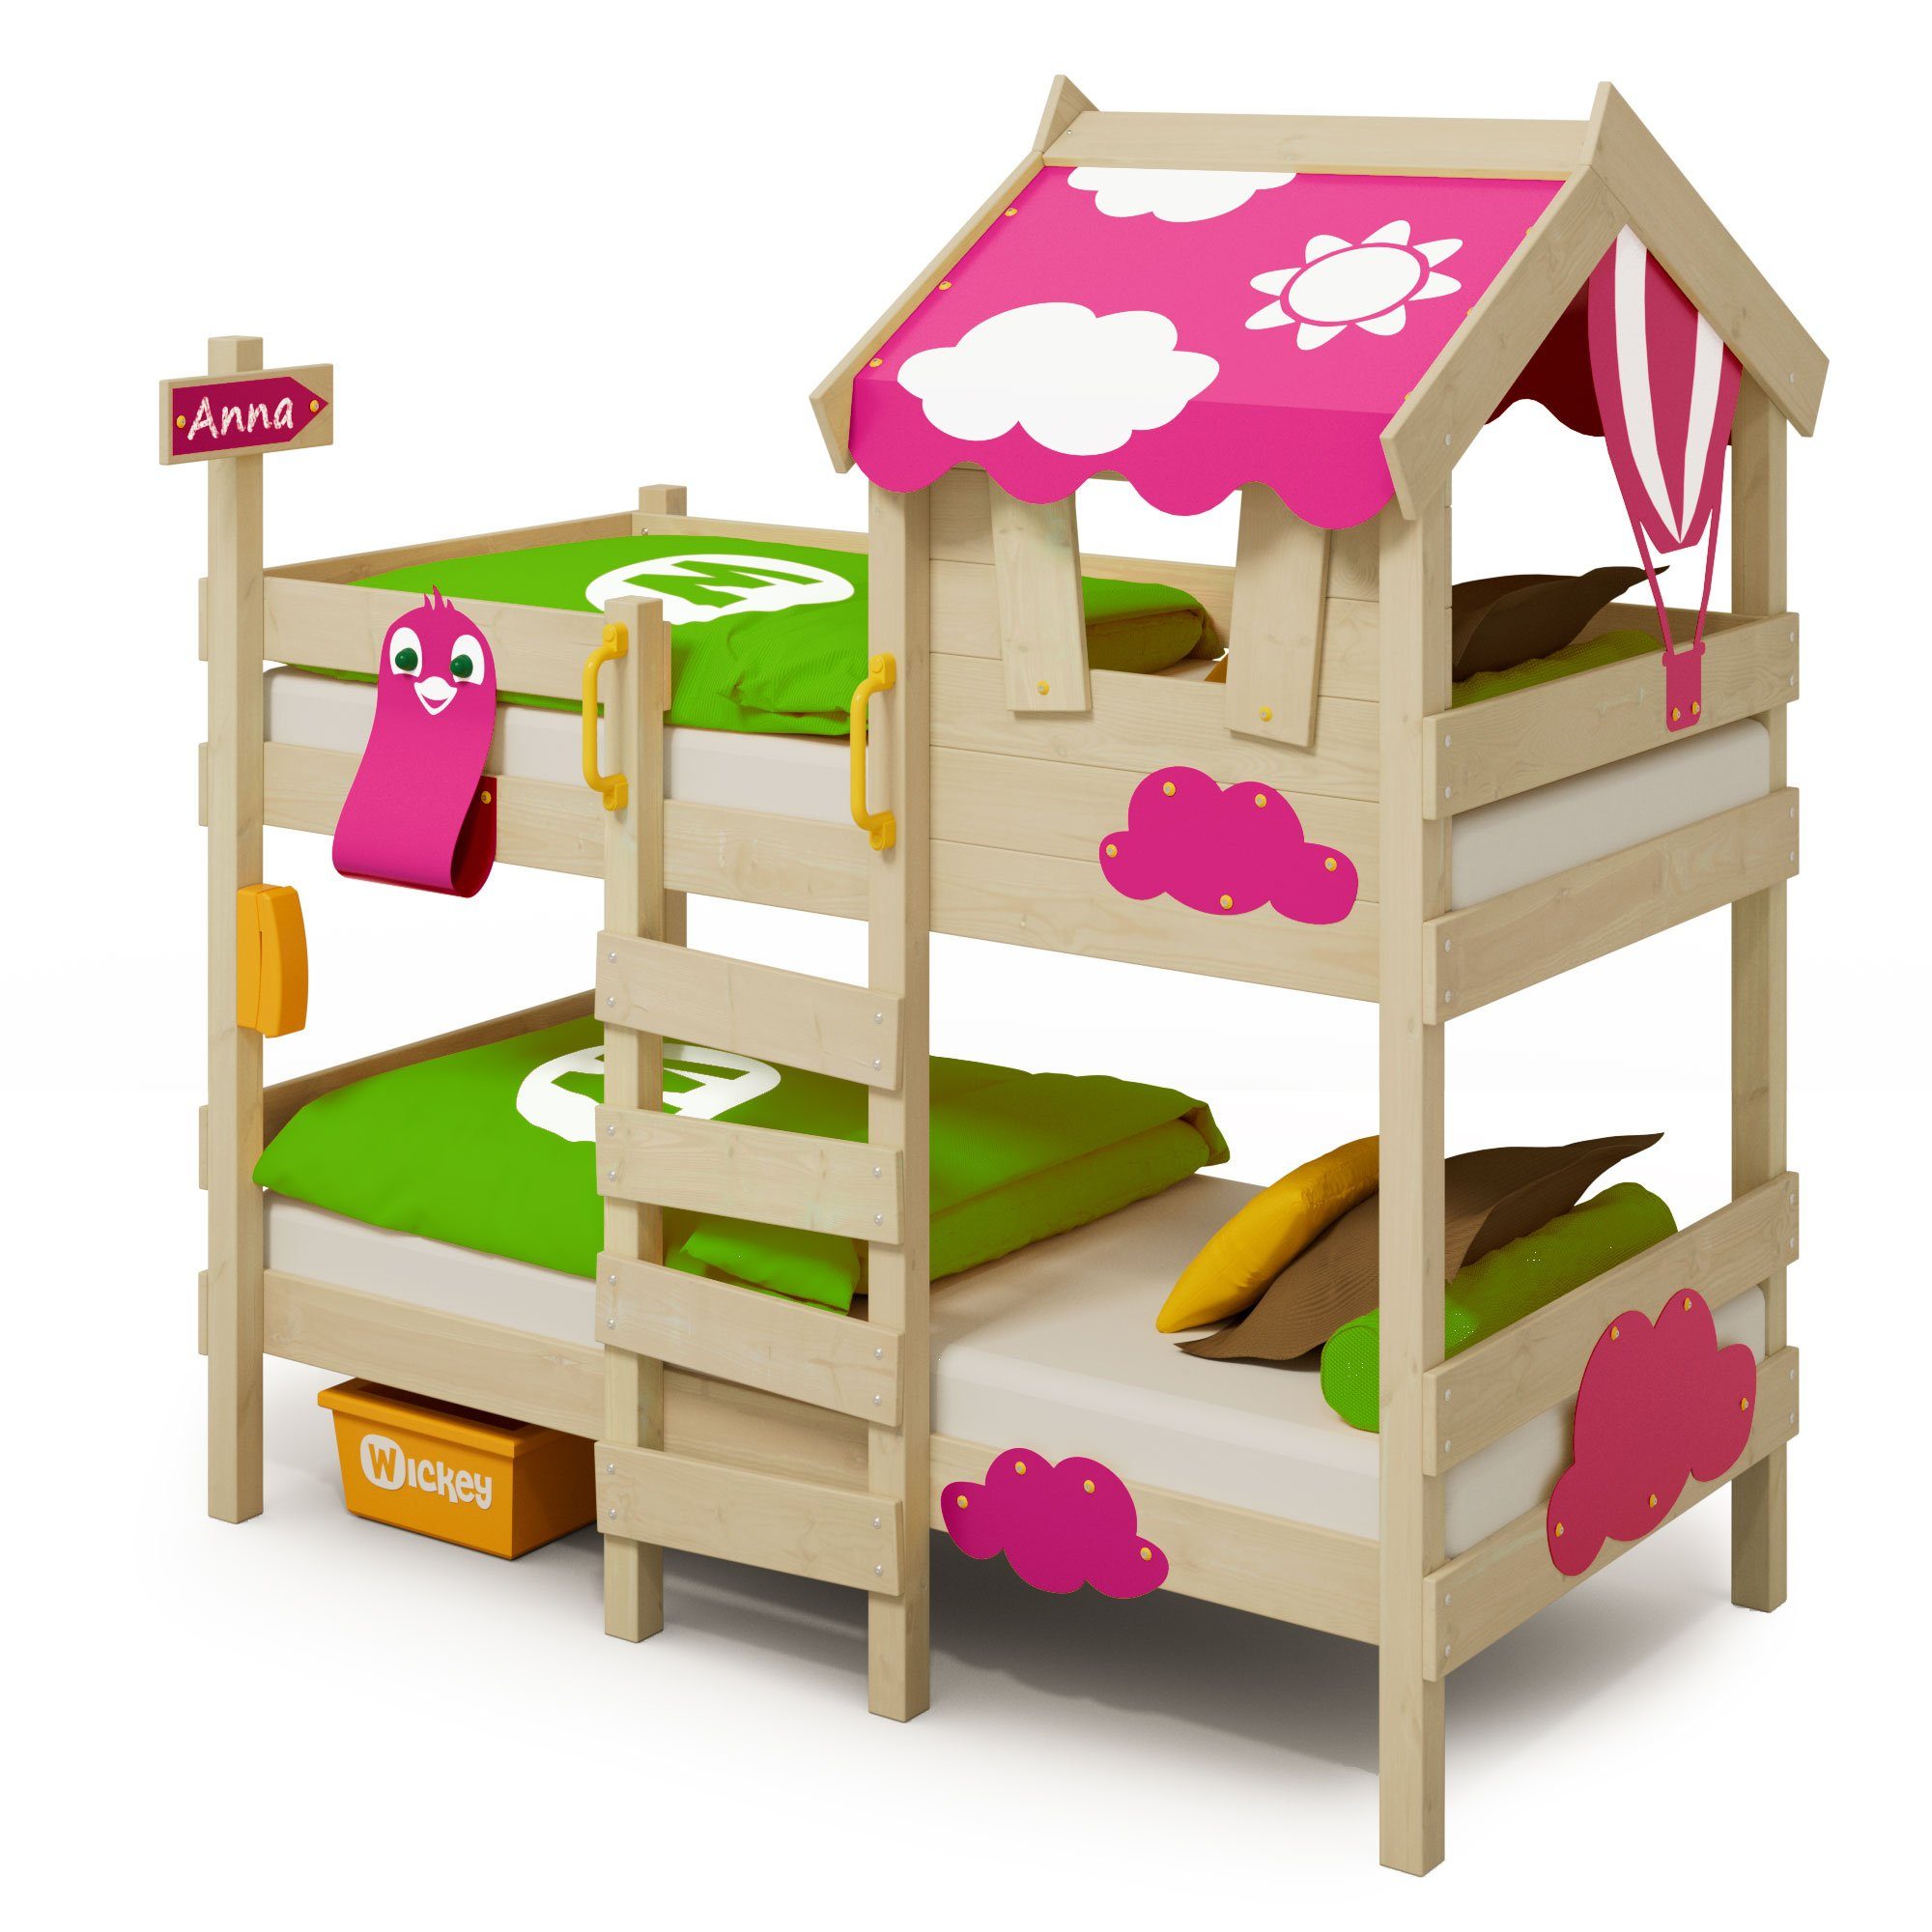 Wickey Kinderbett Crazy Daisy - Hochbett, Spielbett 90 x 200 cm (Holzpaket aus Pfosten und Brettern, Etagenbett mit Kletterleiter für Kinder), Massivholz pink